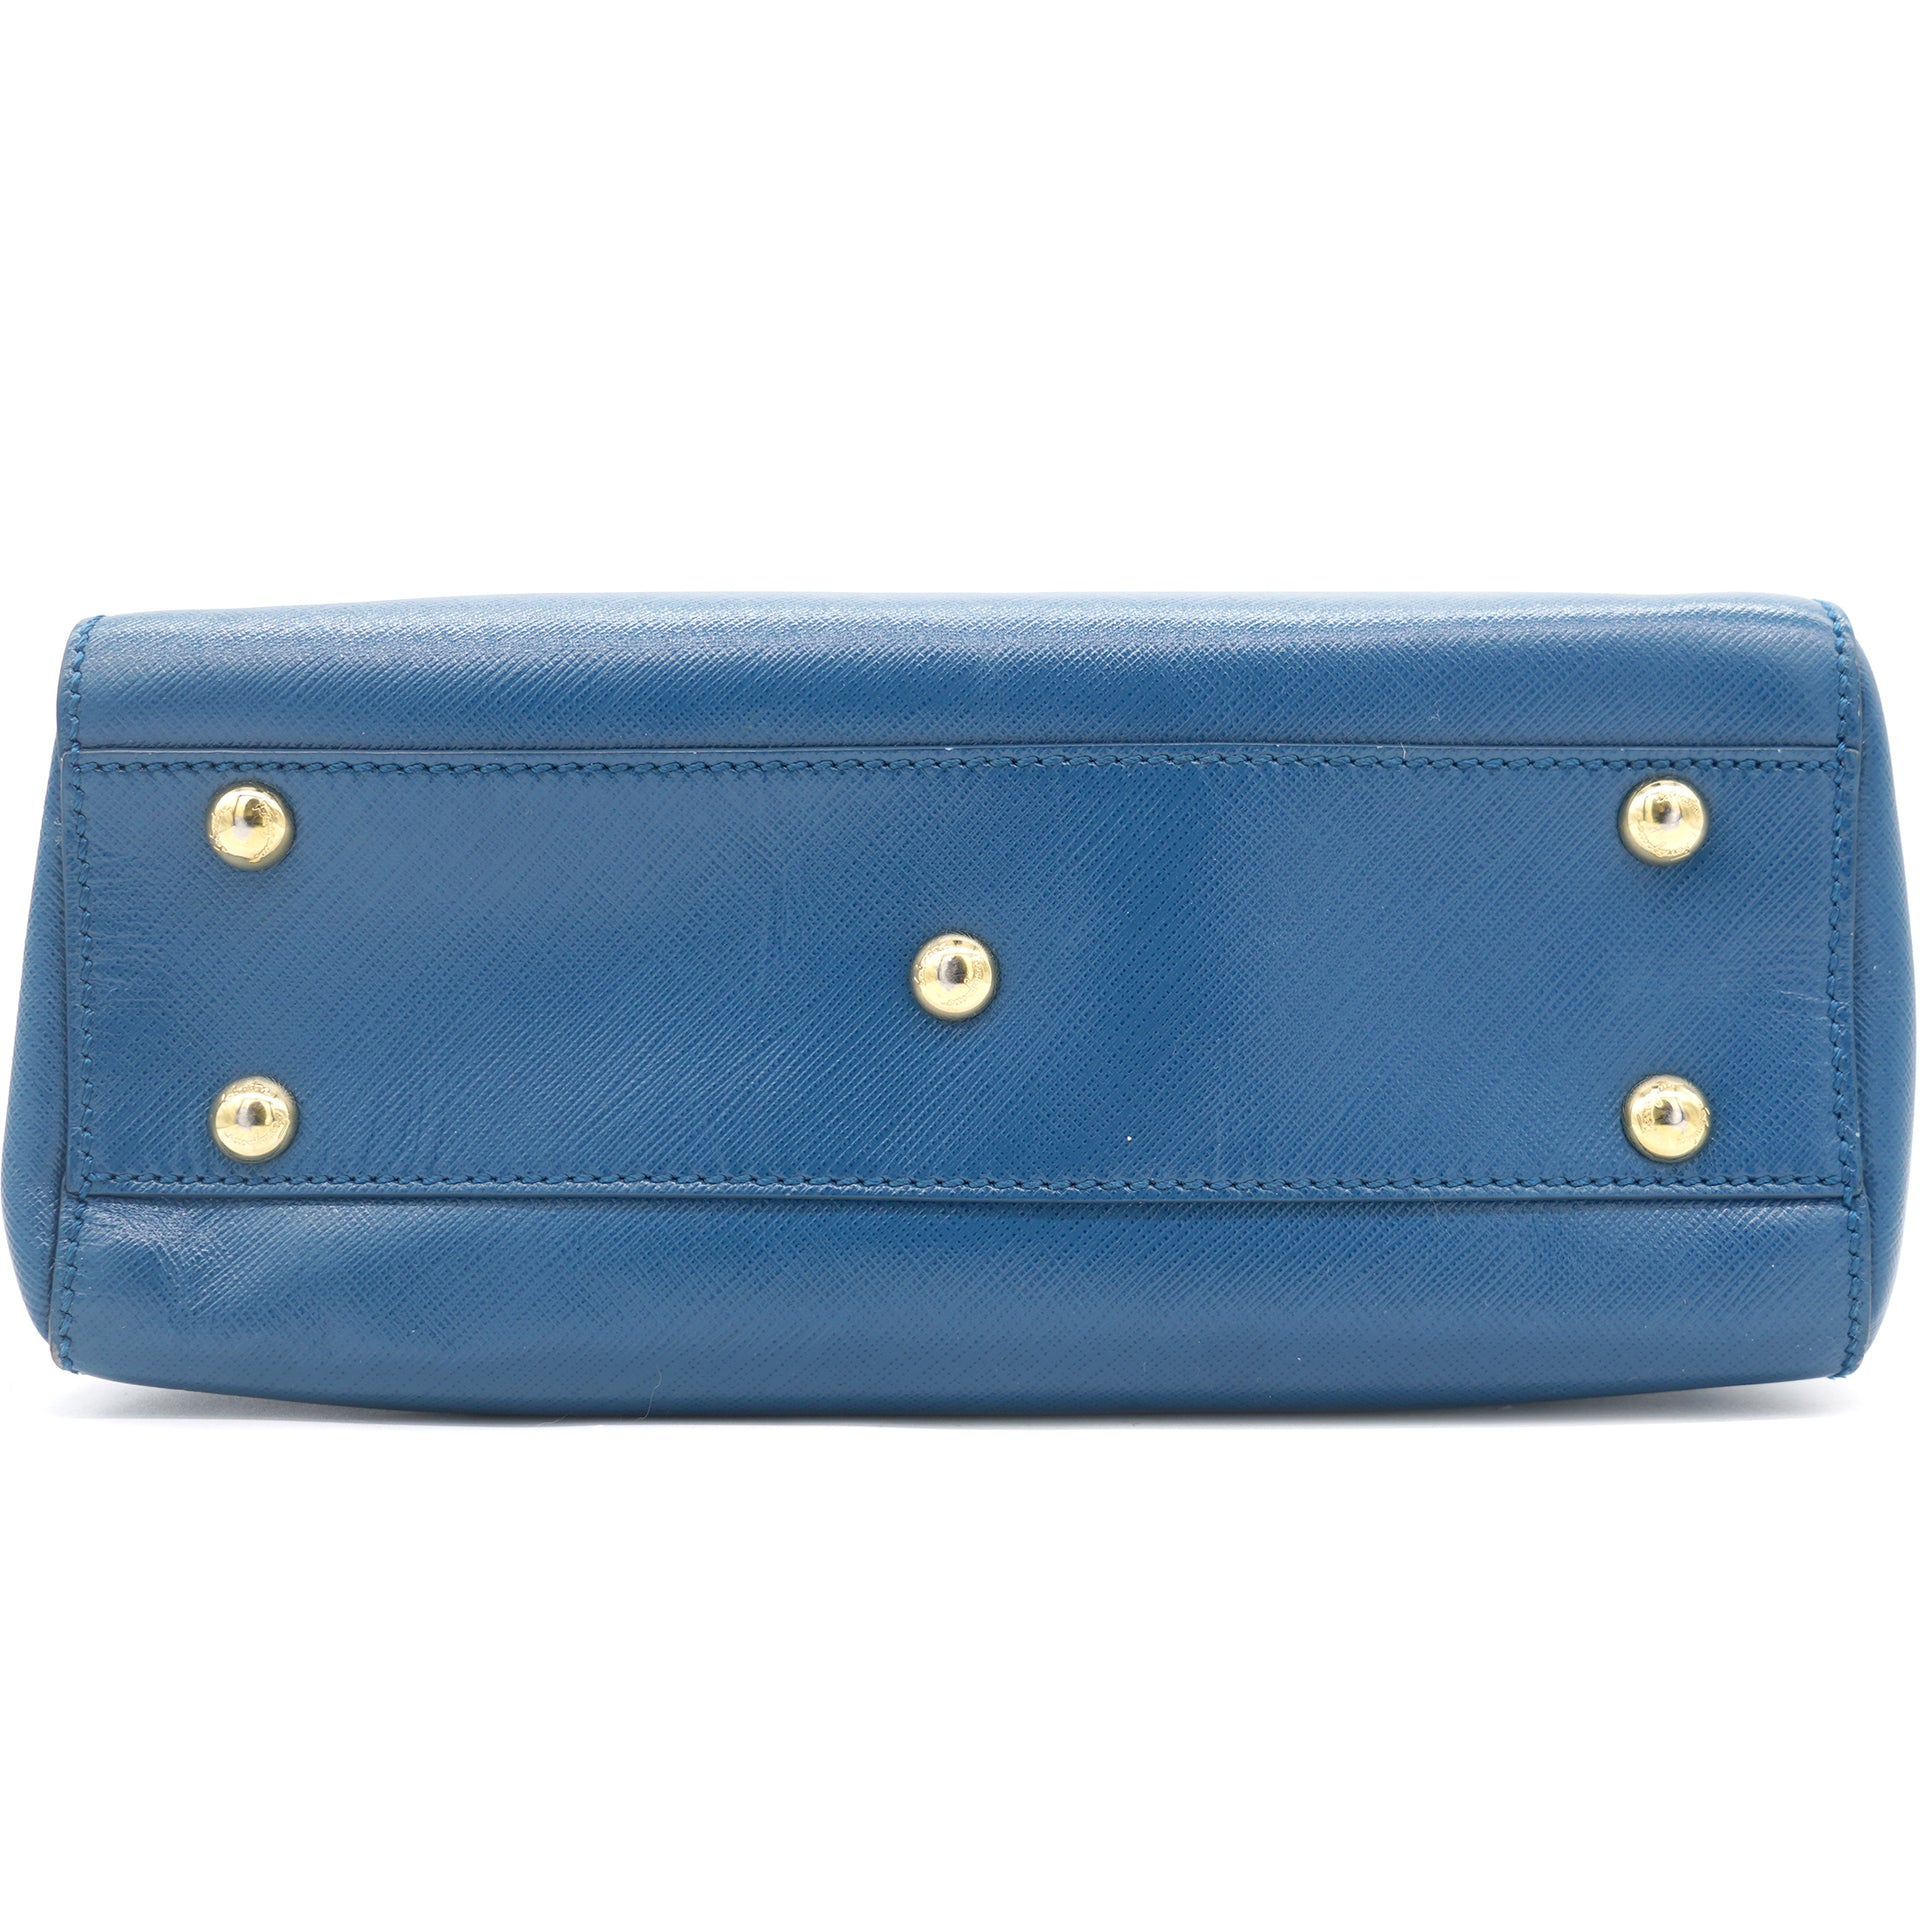 Blue Pdm Handbag - Labbaik International